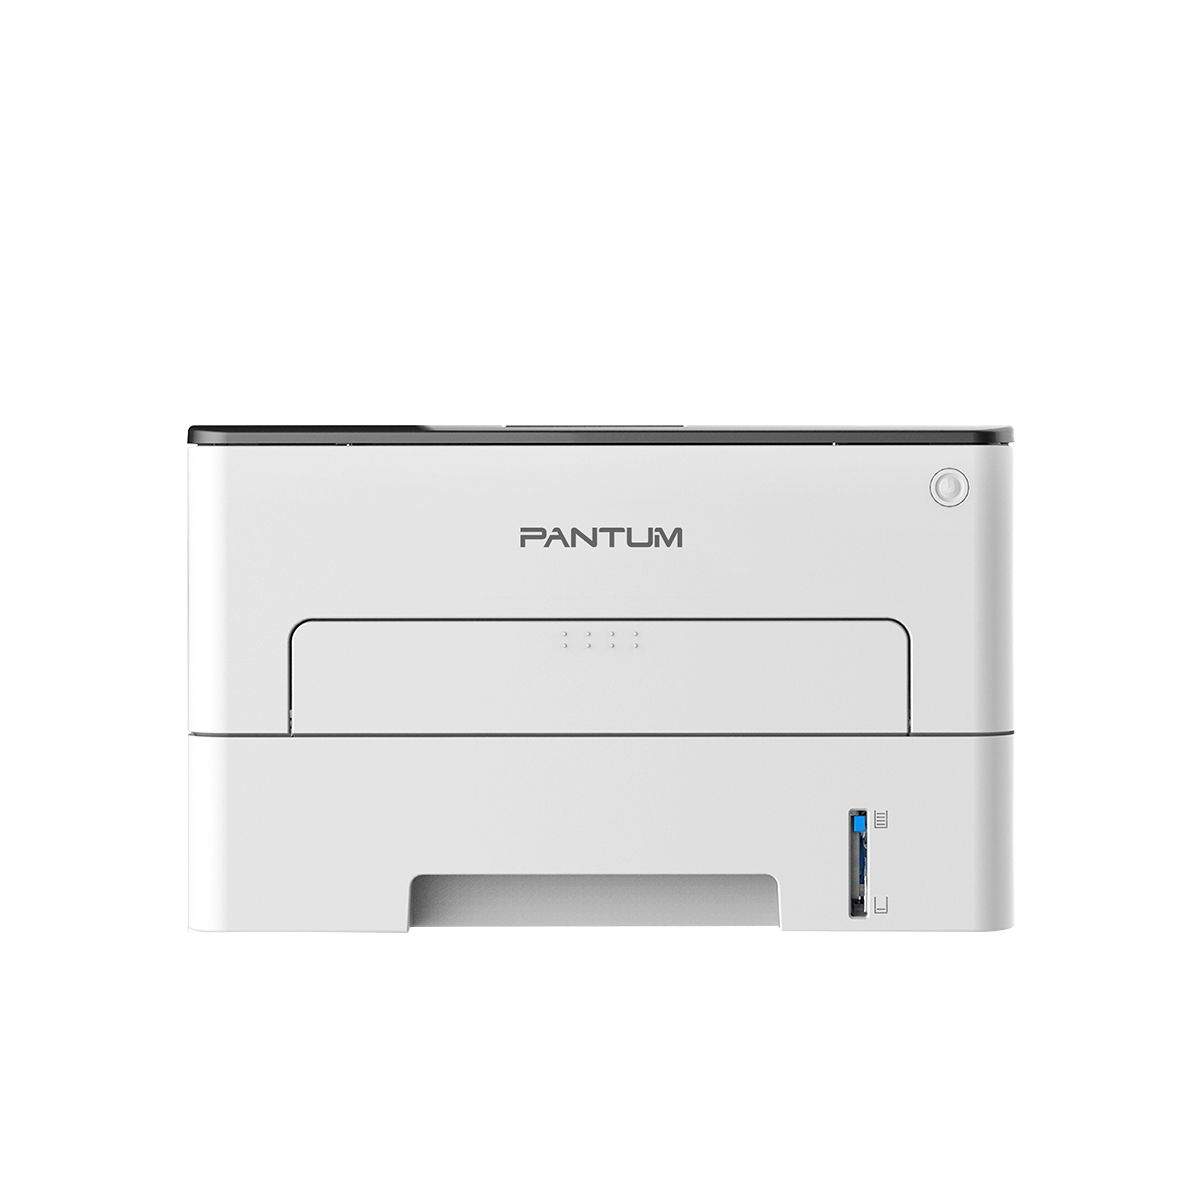 Лазерный принтер PANTUM P3010D (1211356), купить в Москве, цены в интернет-магазинах на Мегамаркет